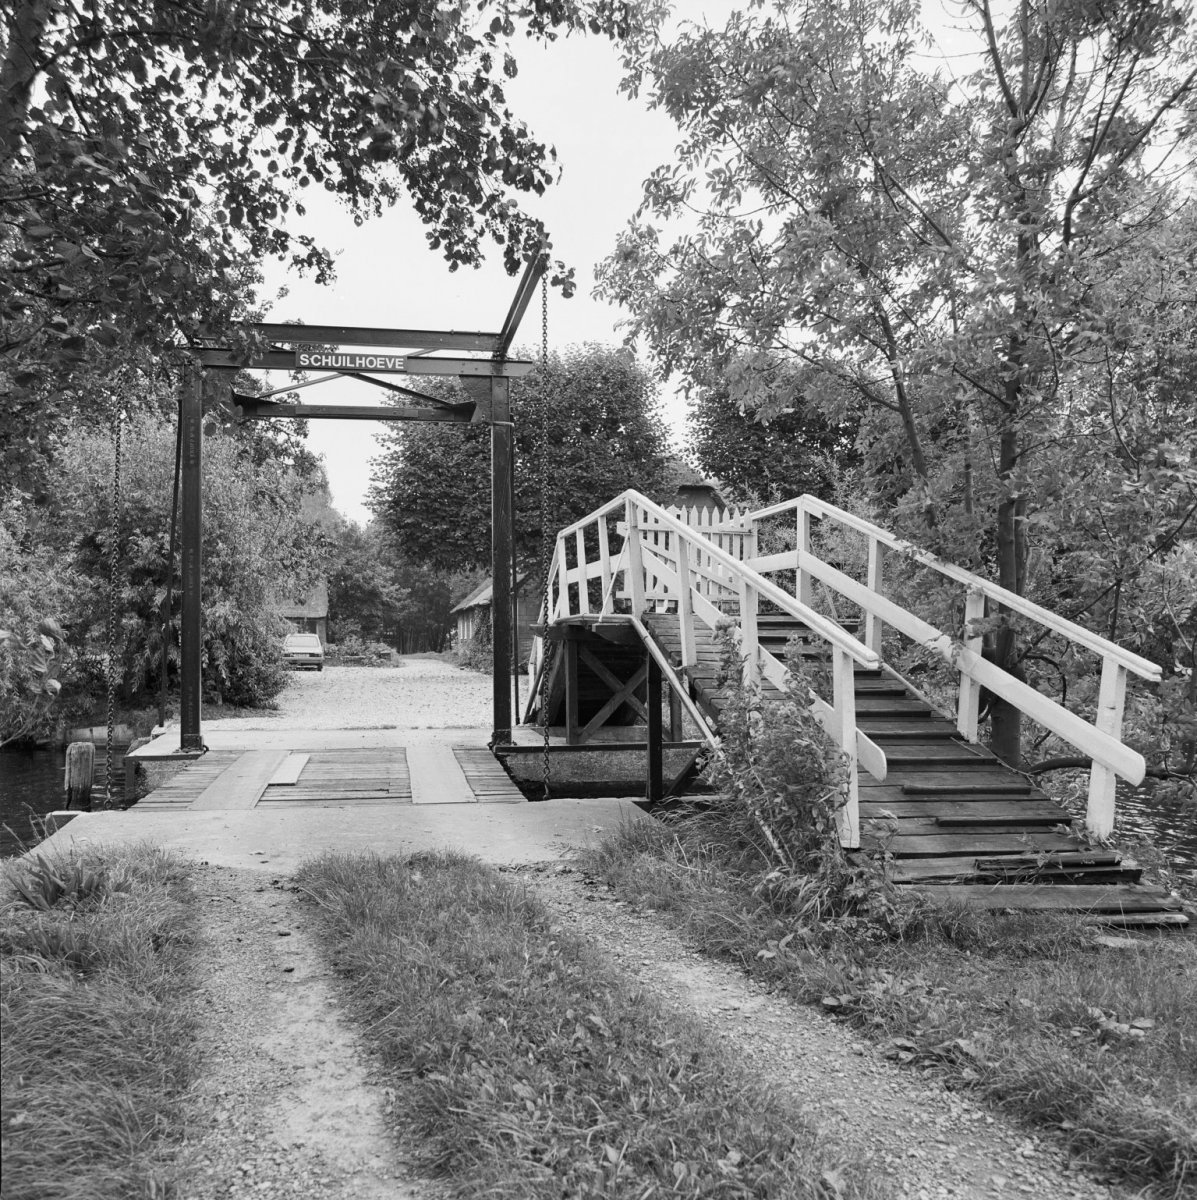 Soms is het hoogholtje, of kwakel naast de (houten) ophaalbrug gewoon blijven liggen, zoals hier bij Weipoort in de gemeente Zoeterwoude